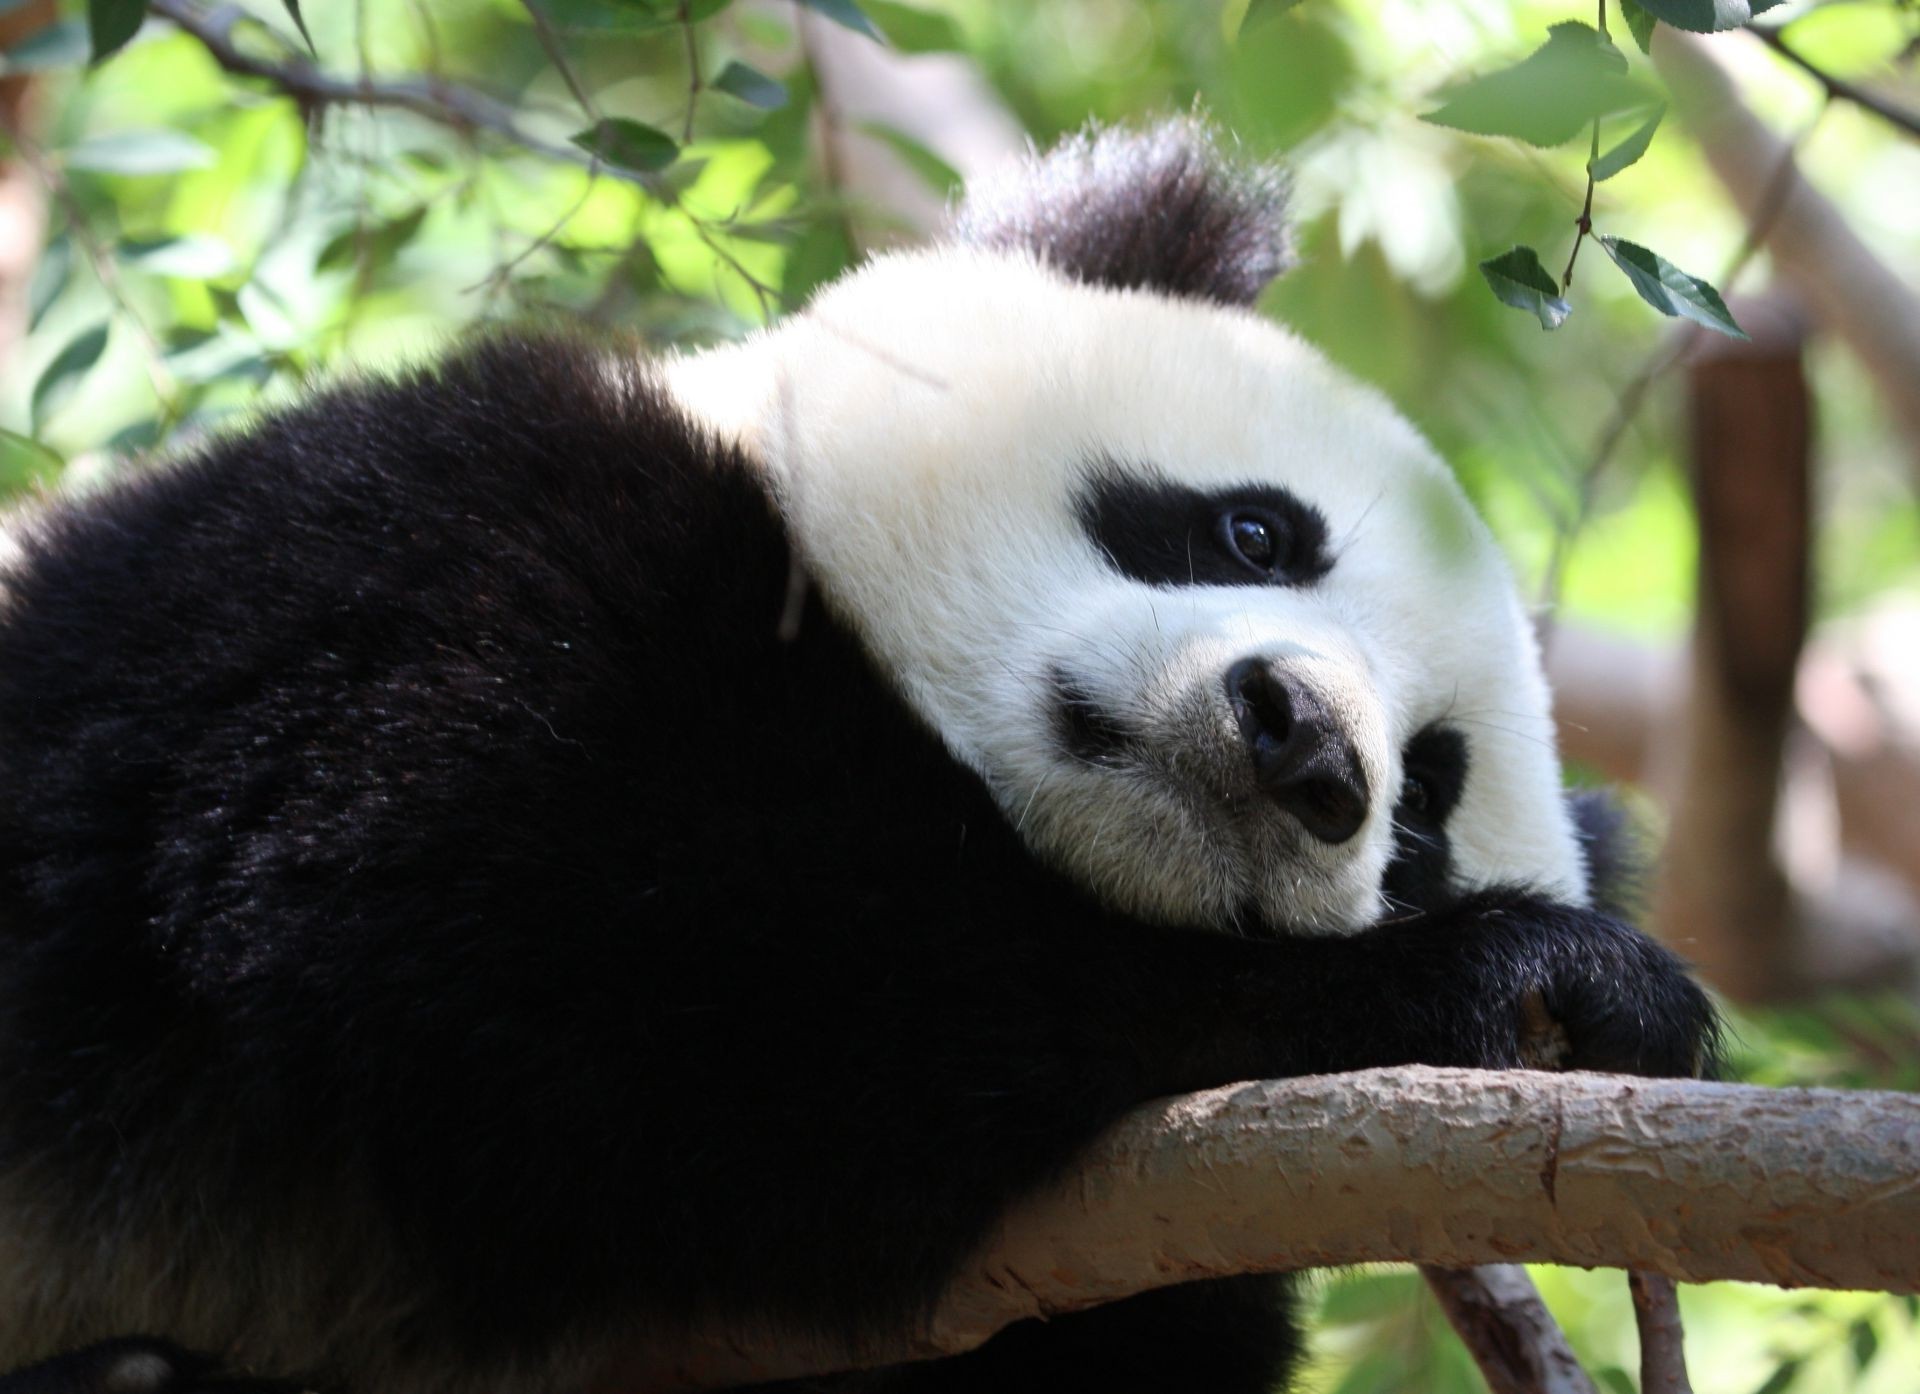 Cute Sad Panda Image